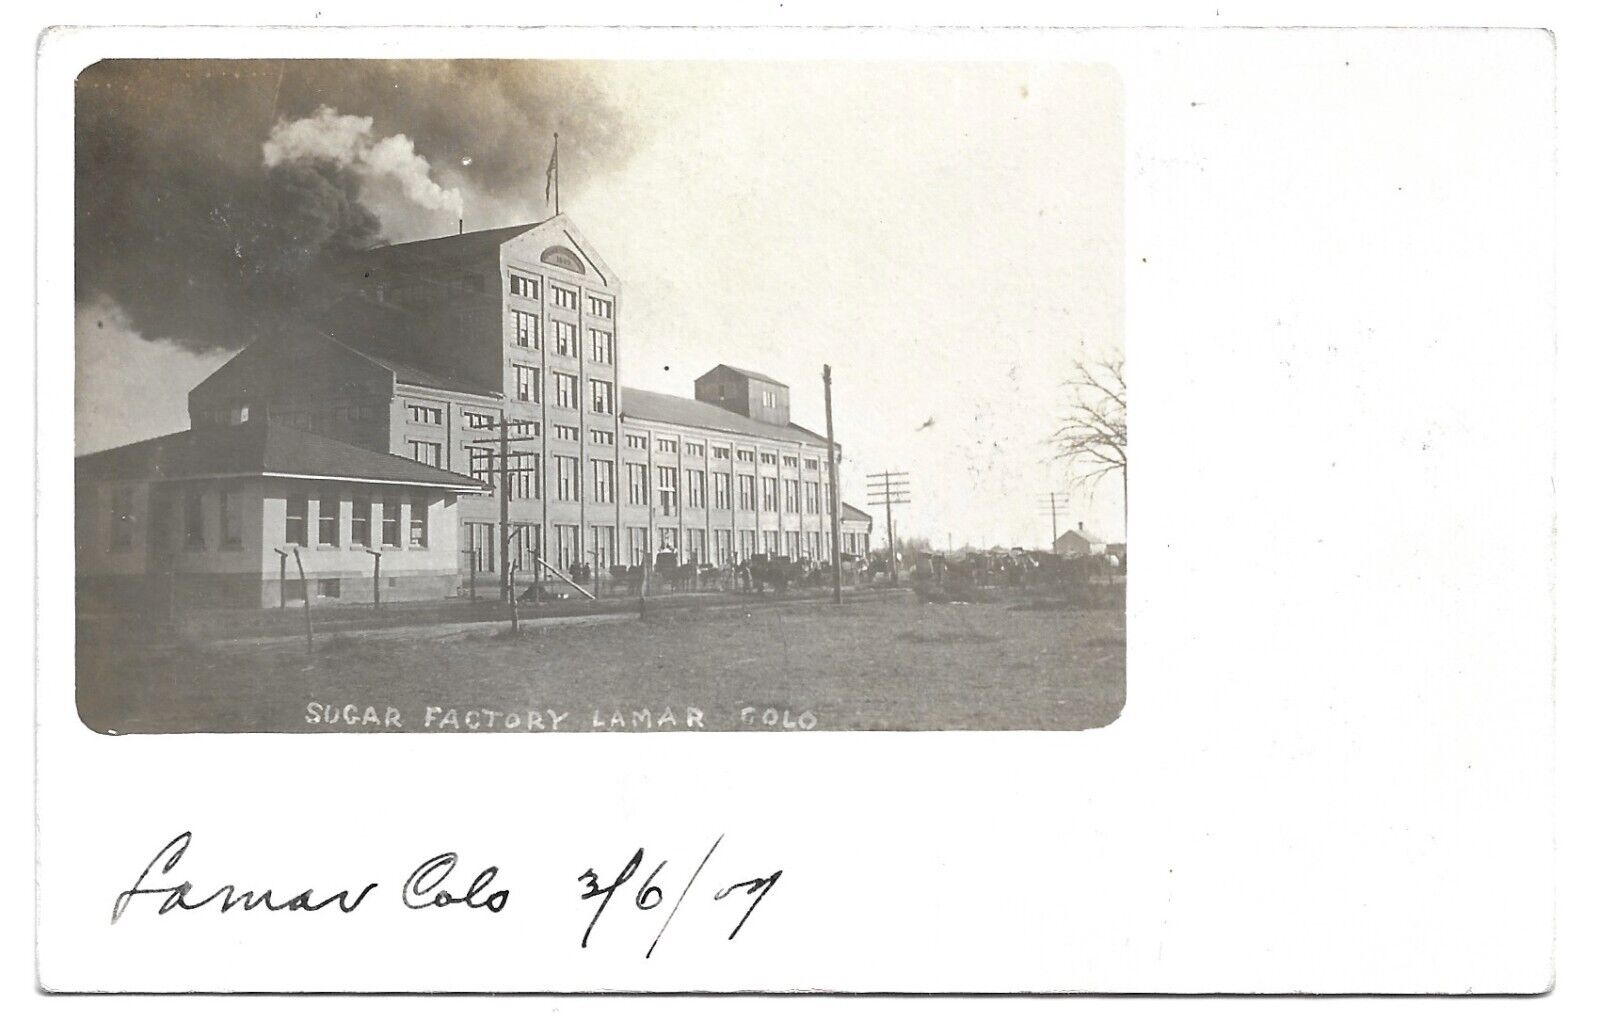 Lamar Colorado Sugar Factory, Antique RPPC Photo Postcard